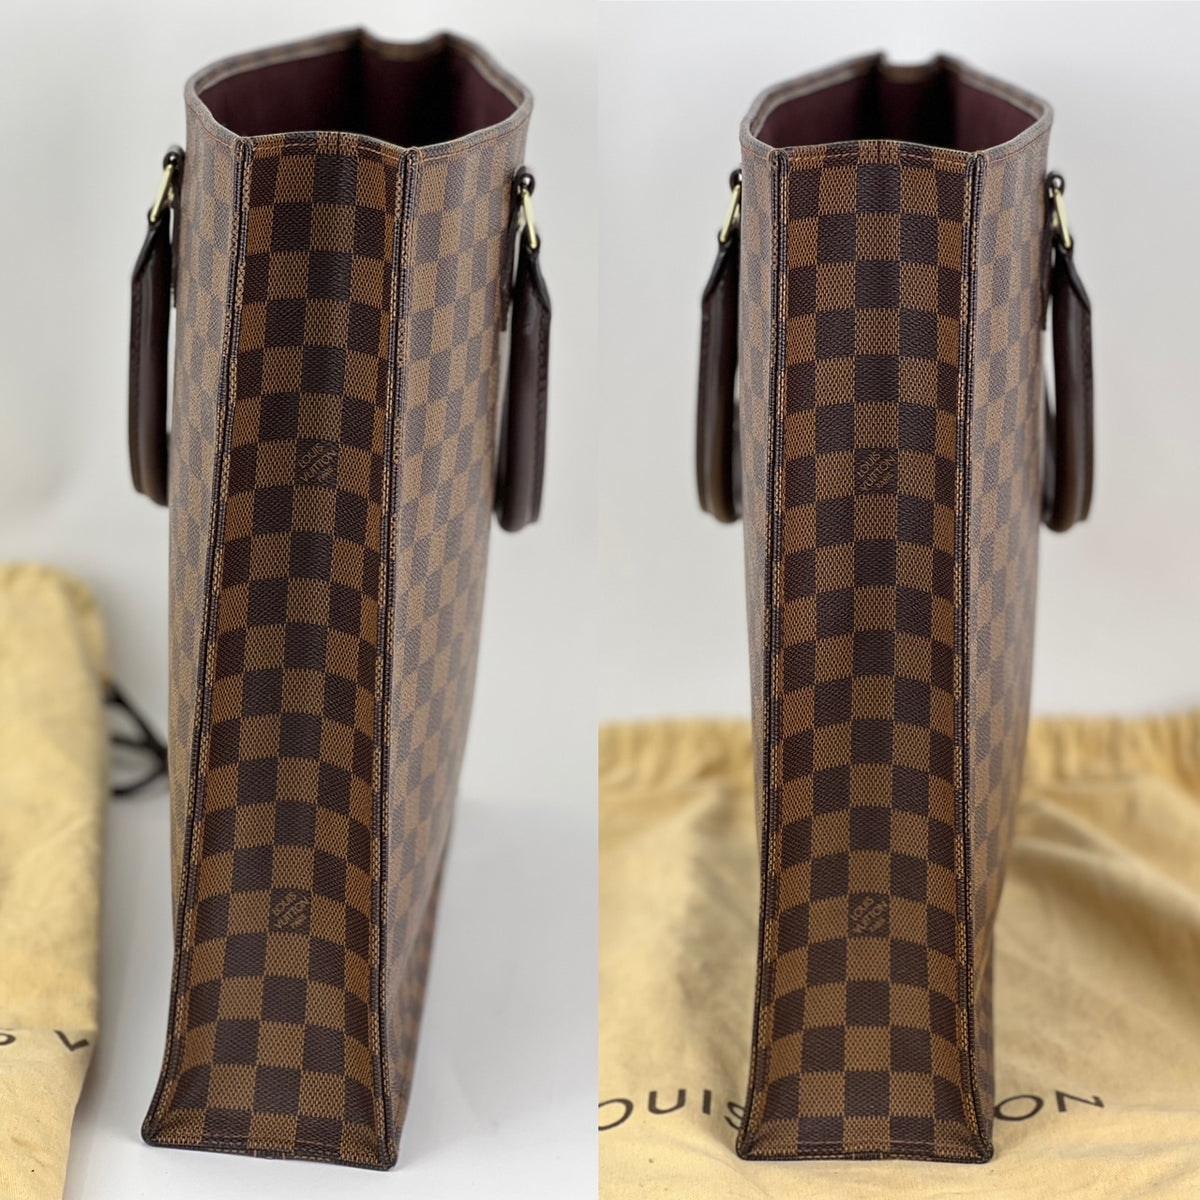 Louis Vuitton M51140 Sac Plat Purse Monogram Tote Bag - Brown